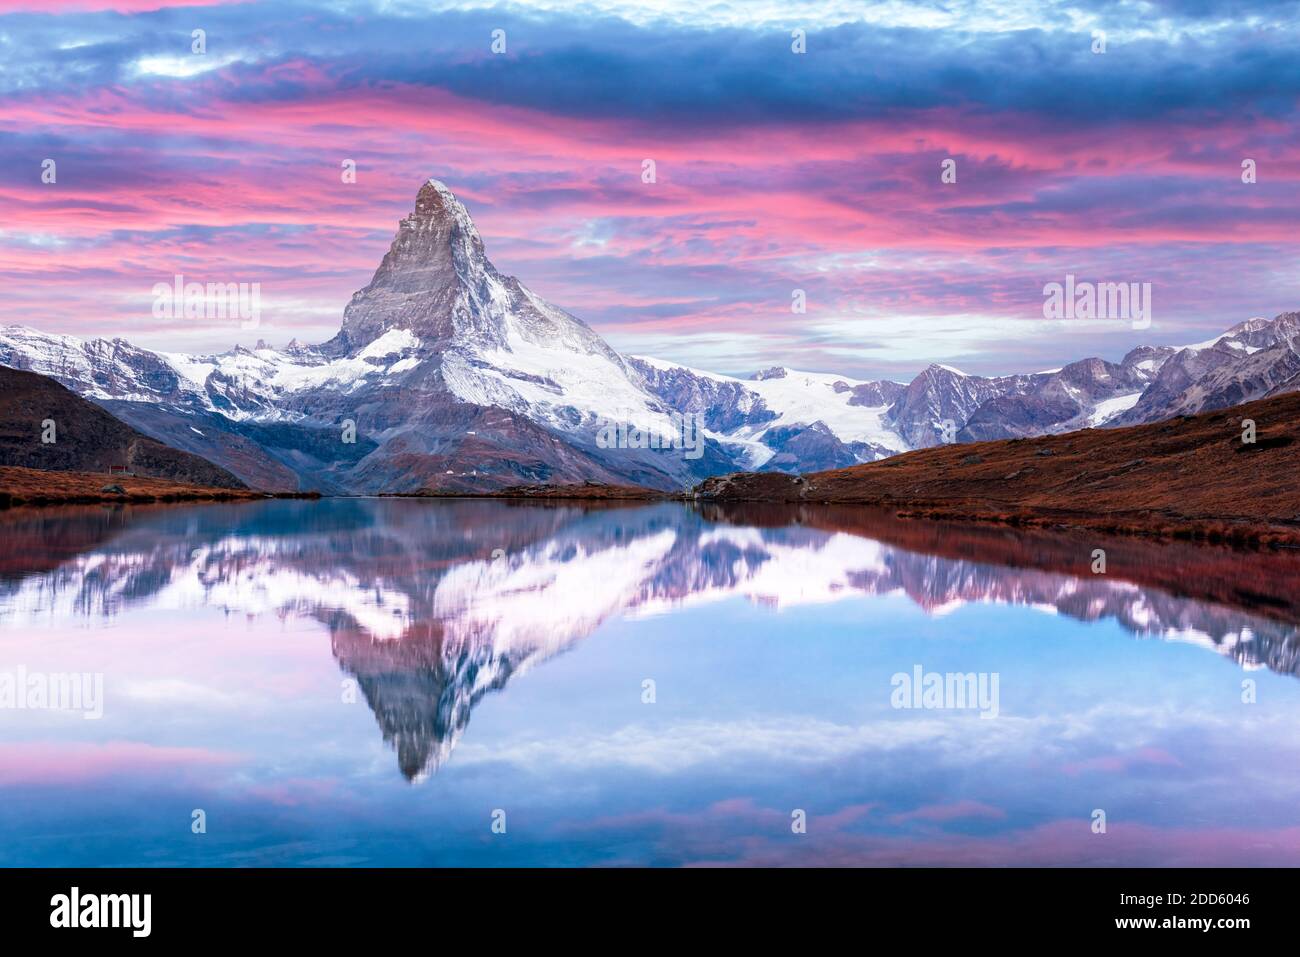 Paysage pittoresque avec le lever du soleil sur le lac Stellisee colorés. Snowy Matterhorn Cervino en crête avec reflet dans l'eau claire. Zermatt, Alpes Suisses Banque D'Images